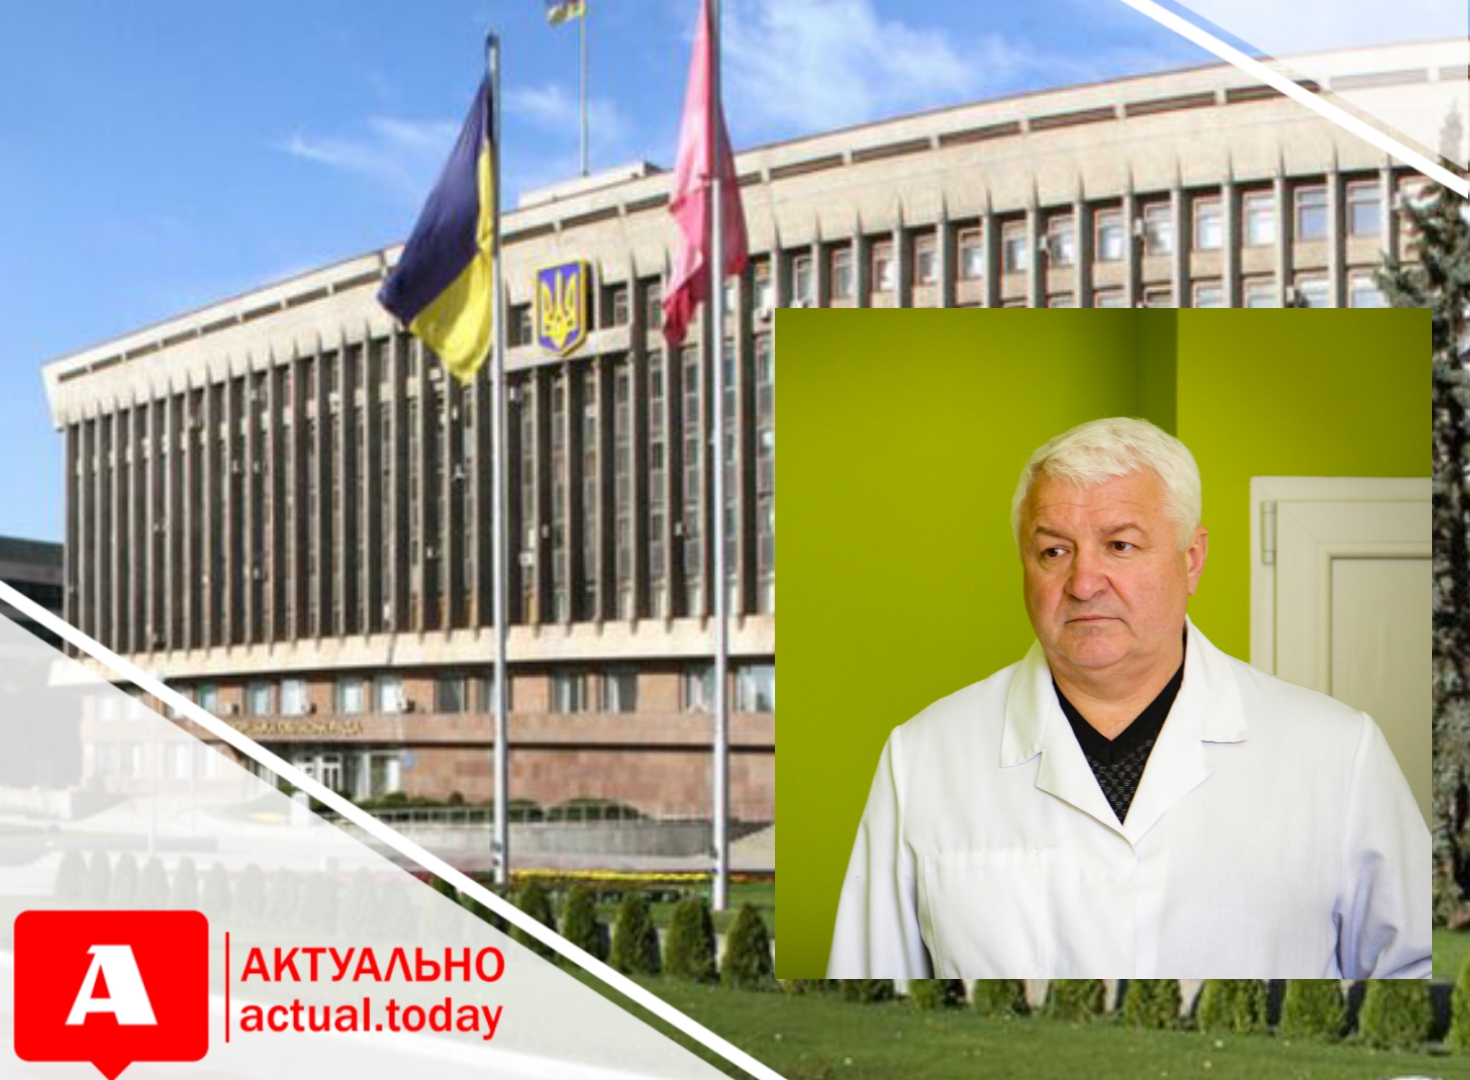 “Нам с вами еще придется выдержать не одну пандемию”: руководитель запорожской инфекционной больницы обратился к депутатам облсовета